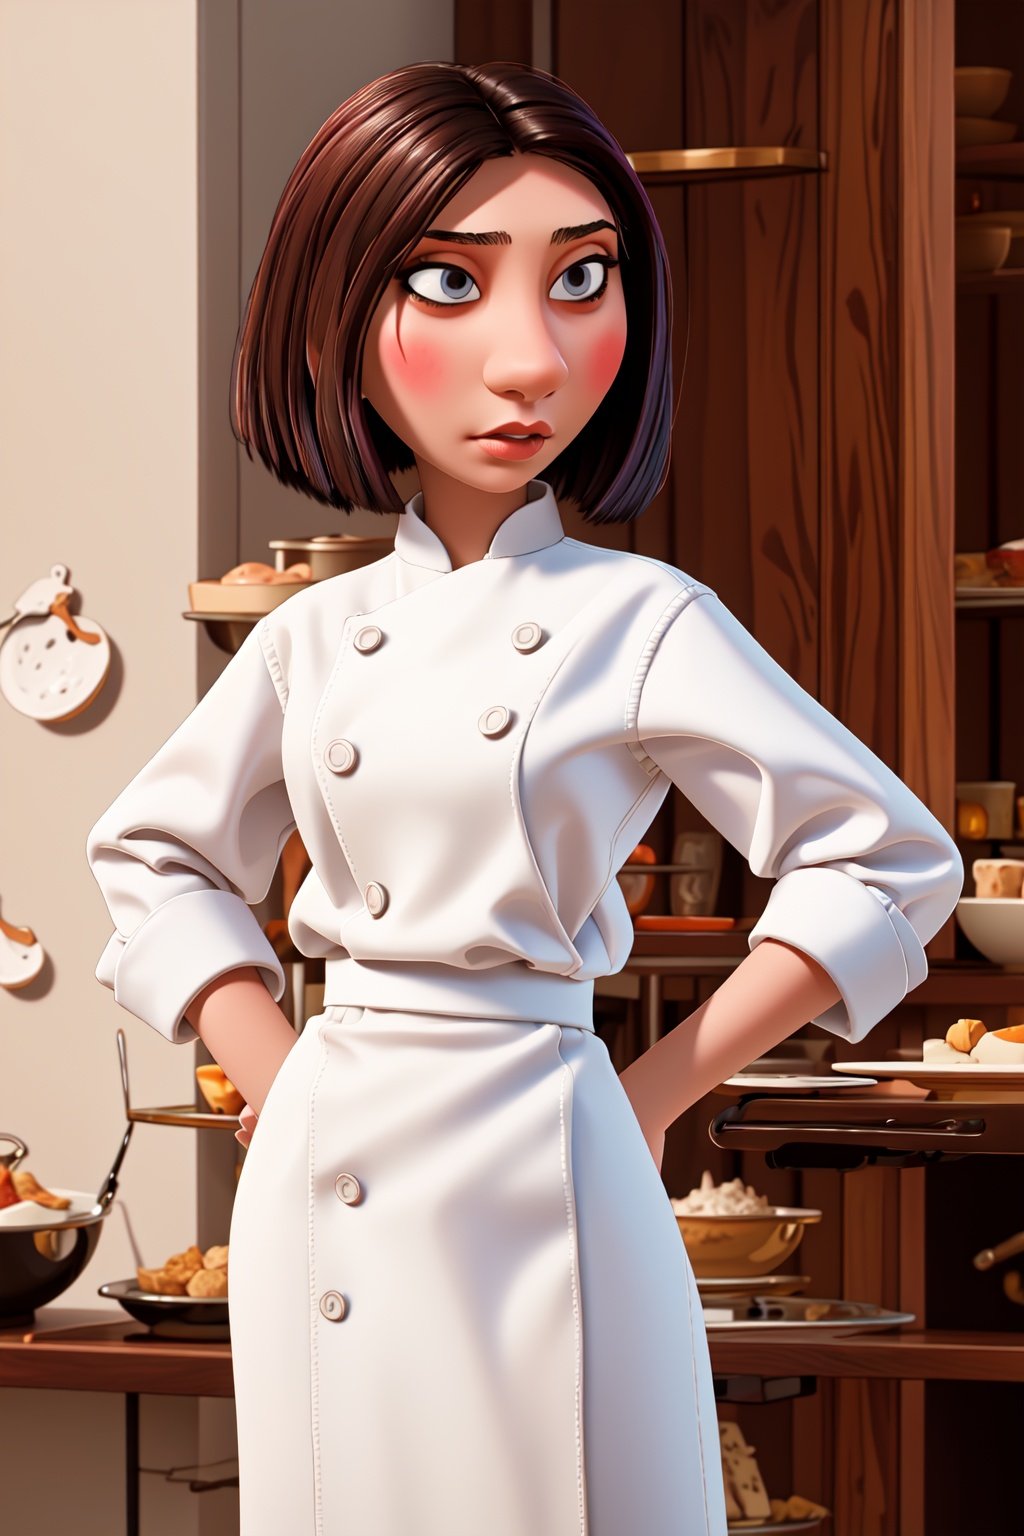 <lora:colettetatou-07:0.9> ,colettetatou , (masterpiece, high quality,:1.2)   woman ,  chef uniform, 